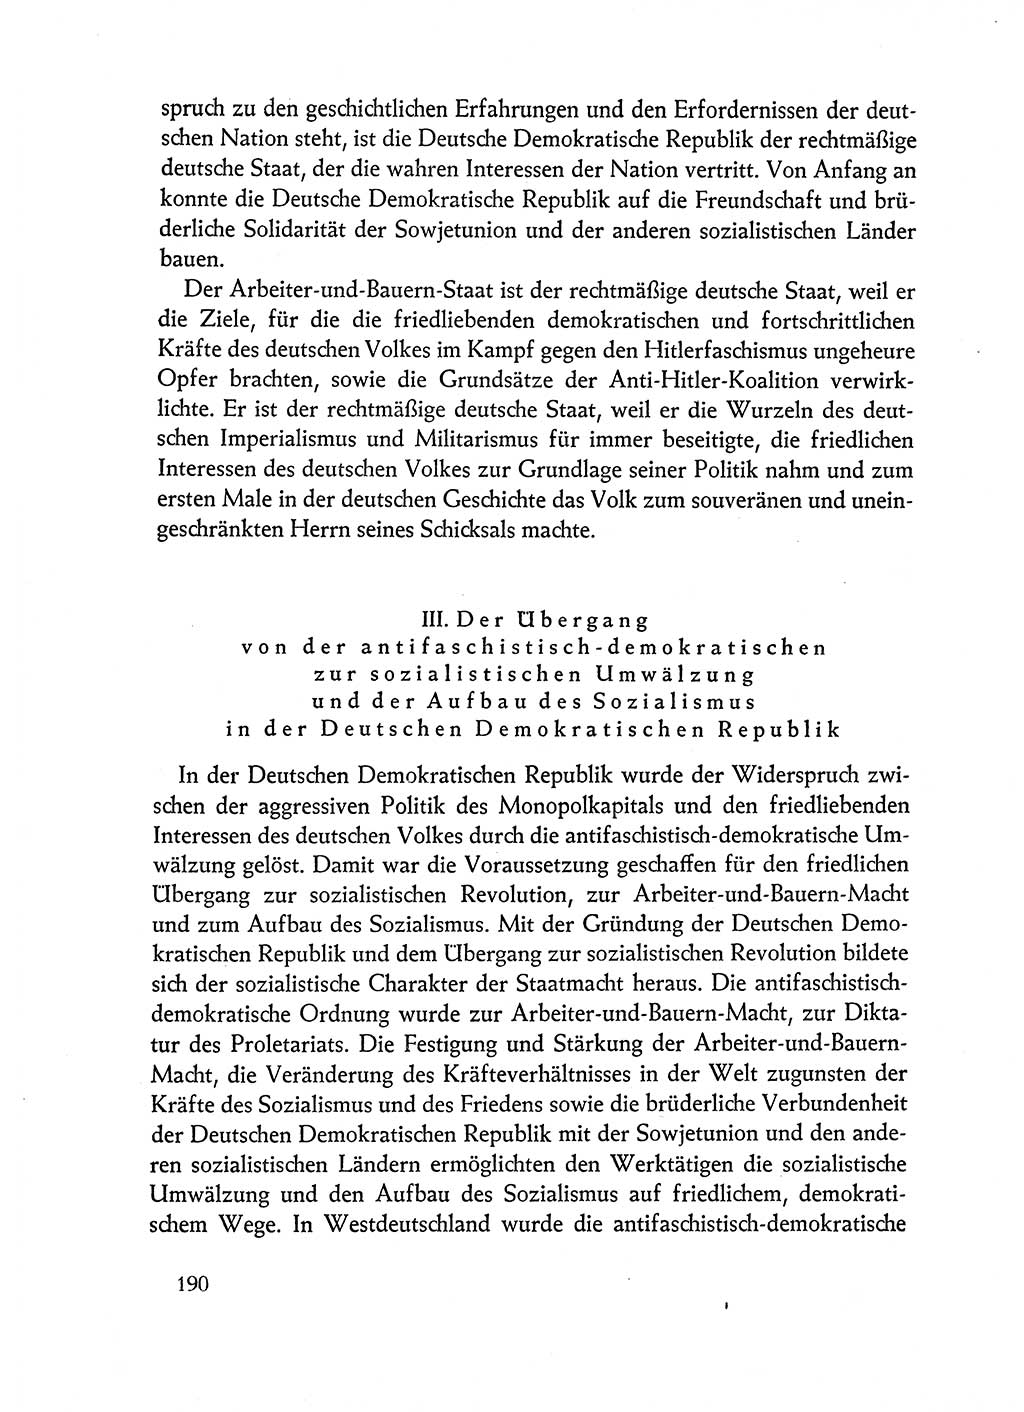 Dokumente der Sozialistischen Einheitspartei Deutschlands (SED) [Deutsche Demokratische Republik (DDR)] 1962-1963, Seite 190 (Dok. SED DDR 1962-1963, S. 190)